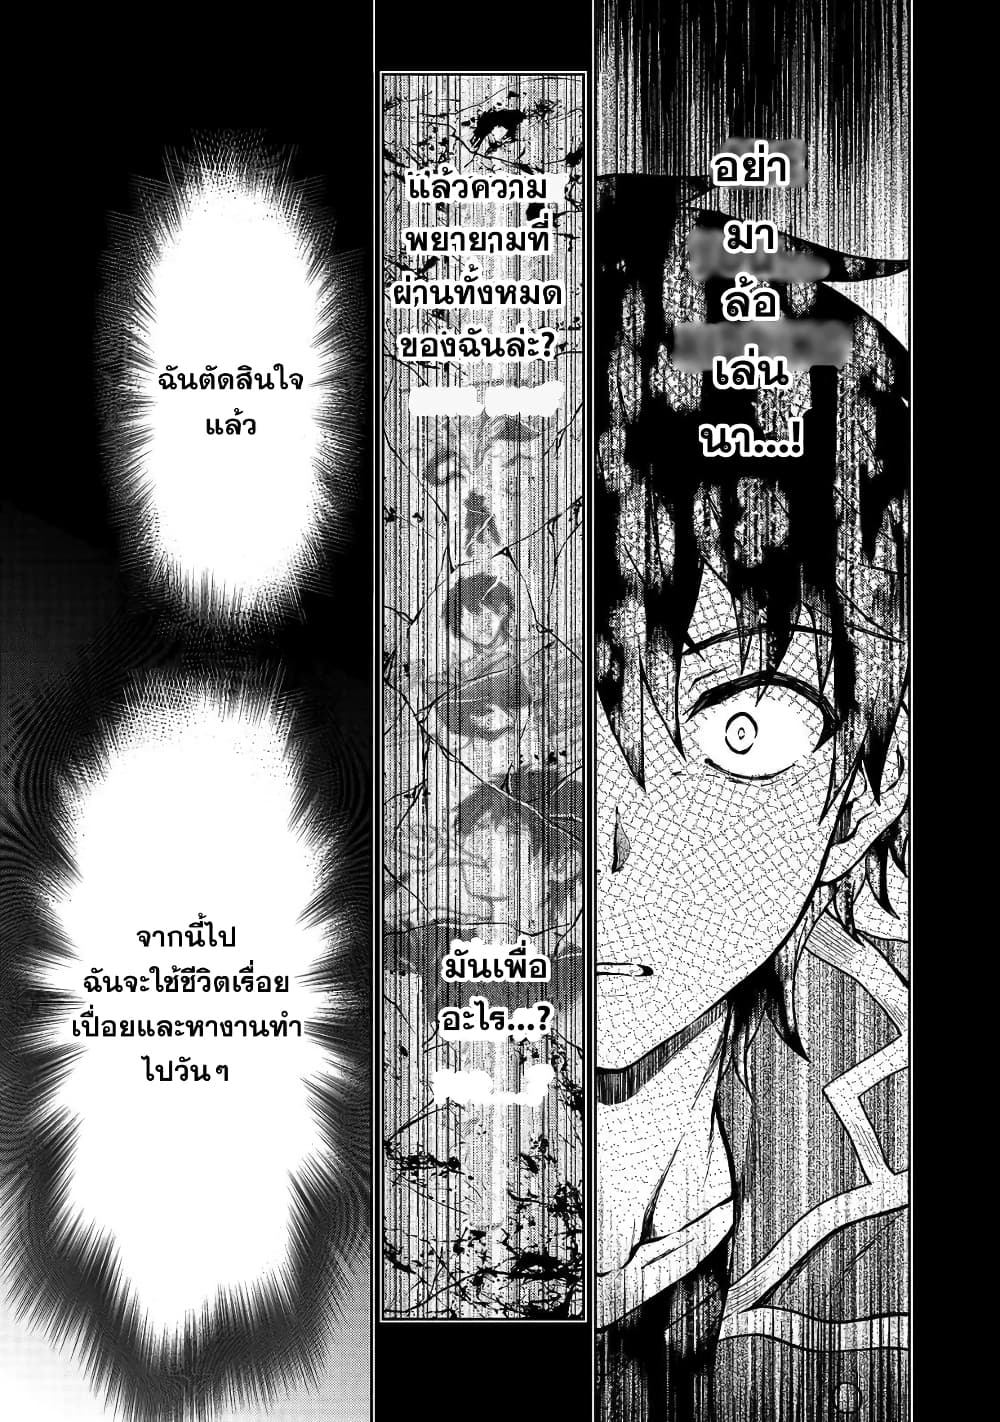 D-kyuu Boukensha no Ore, Naze ka Yuusha Party ni Kanyuu Sareta Ageku, Oujo  ni Tsukima Towareteru (Light Novel) Manga